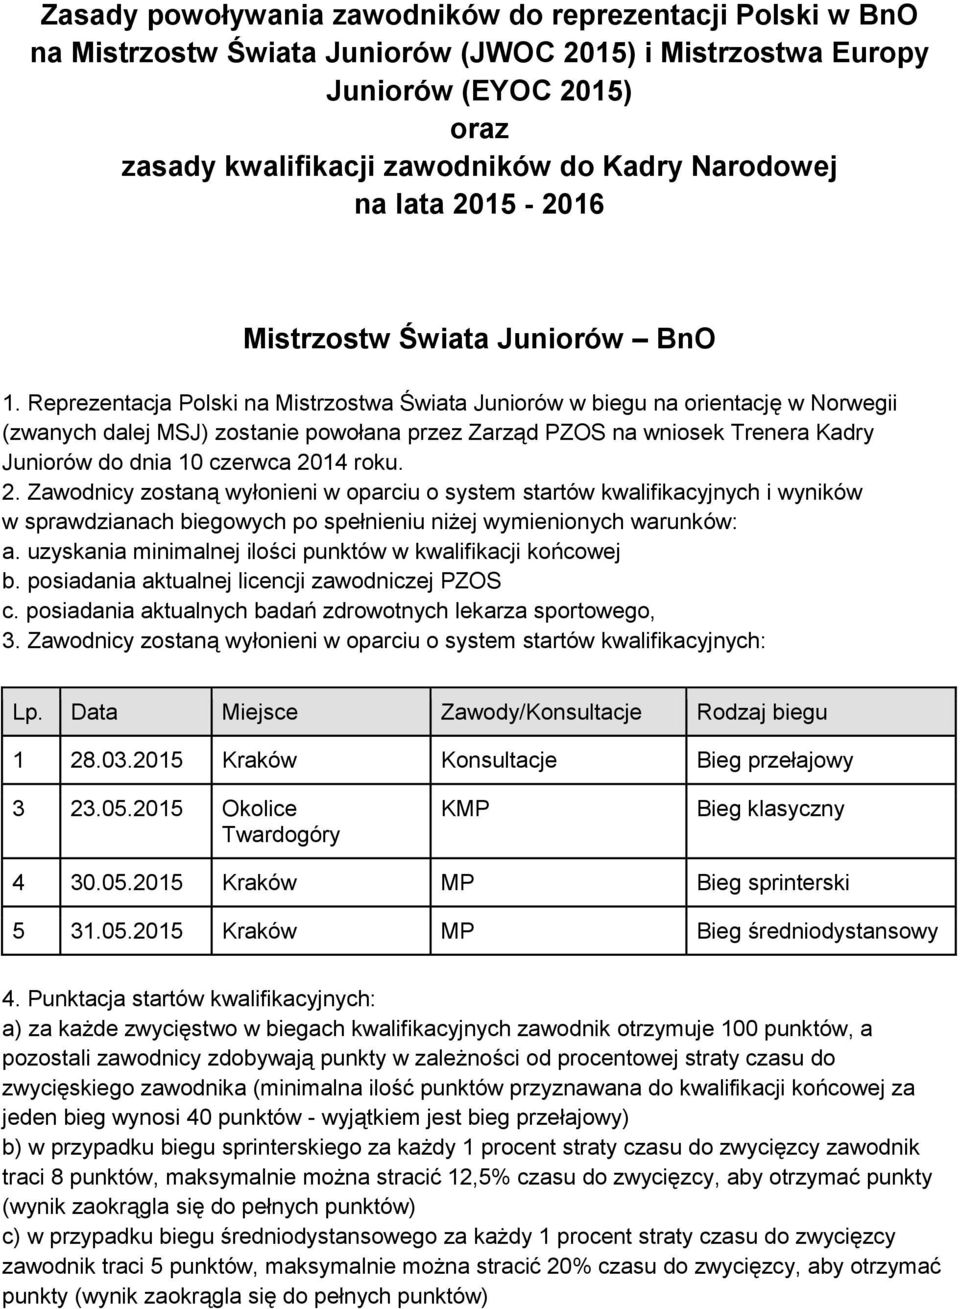 Reprezentacja Polski na Mistrzostwa Świata Juniorów w biegu na orientację w Norwegii (zwanych dalej MSJ) zostanie powołana przez Zarząd PZOS na wniosek Trenera Kadry Juniorów do dnia 10 czerwca 2014